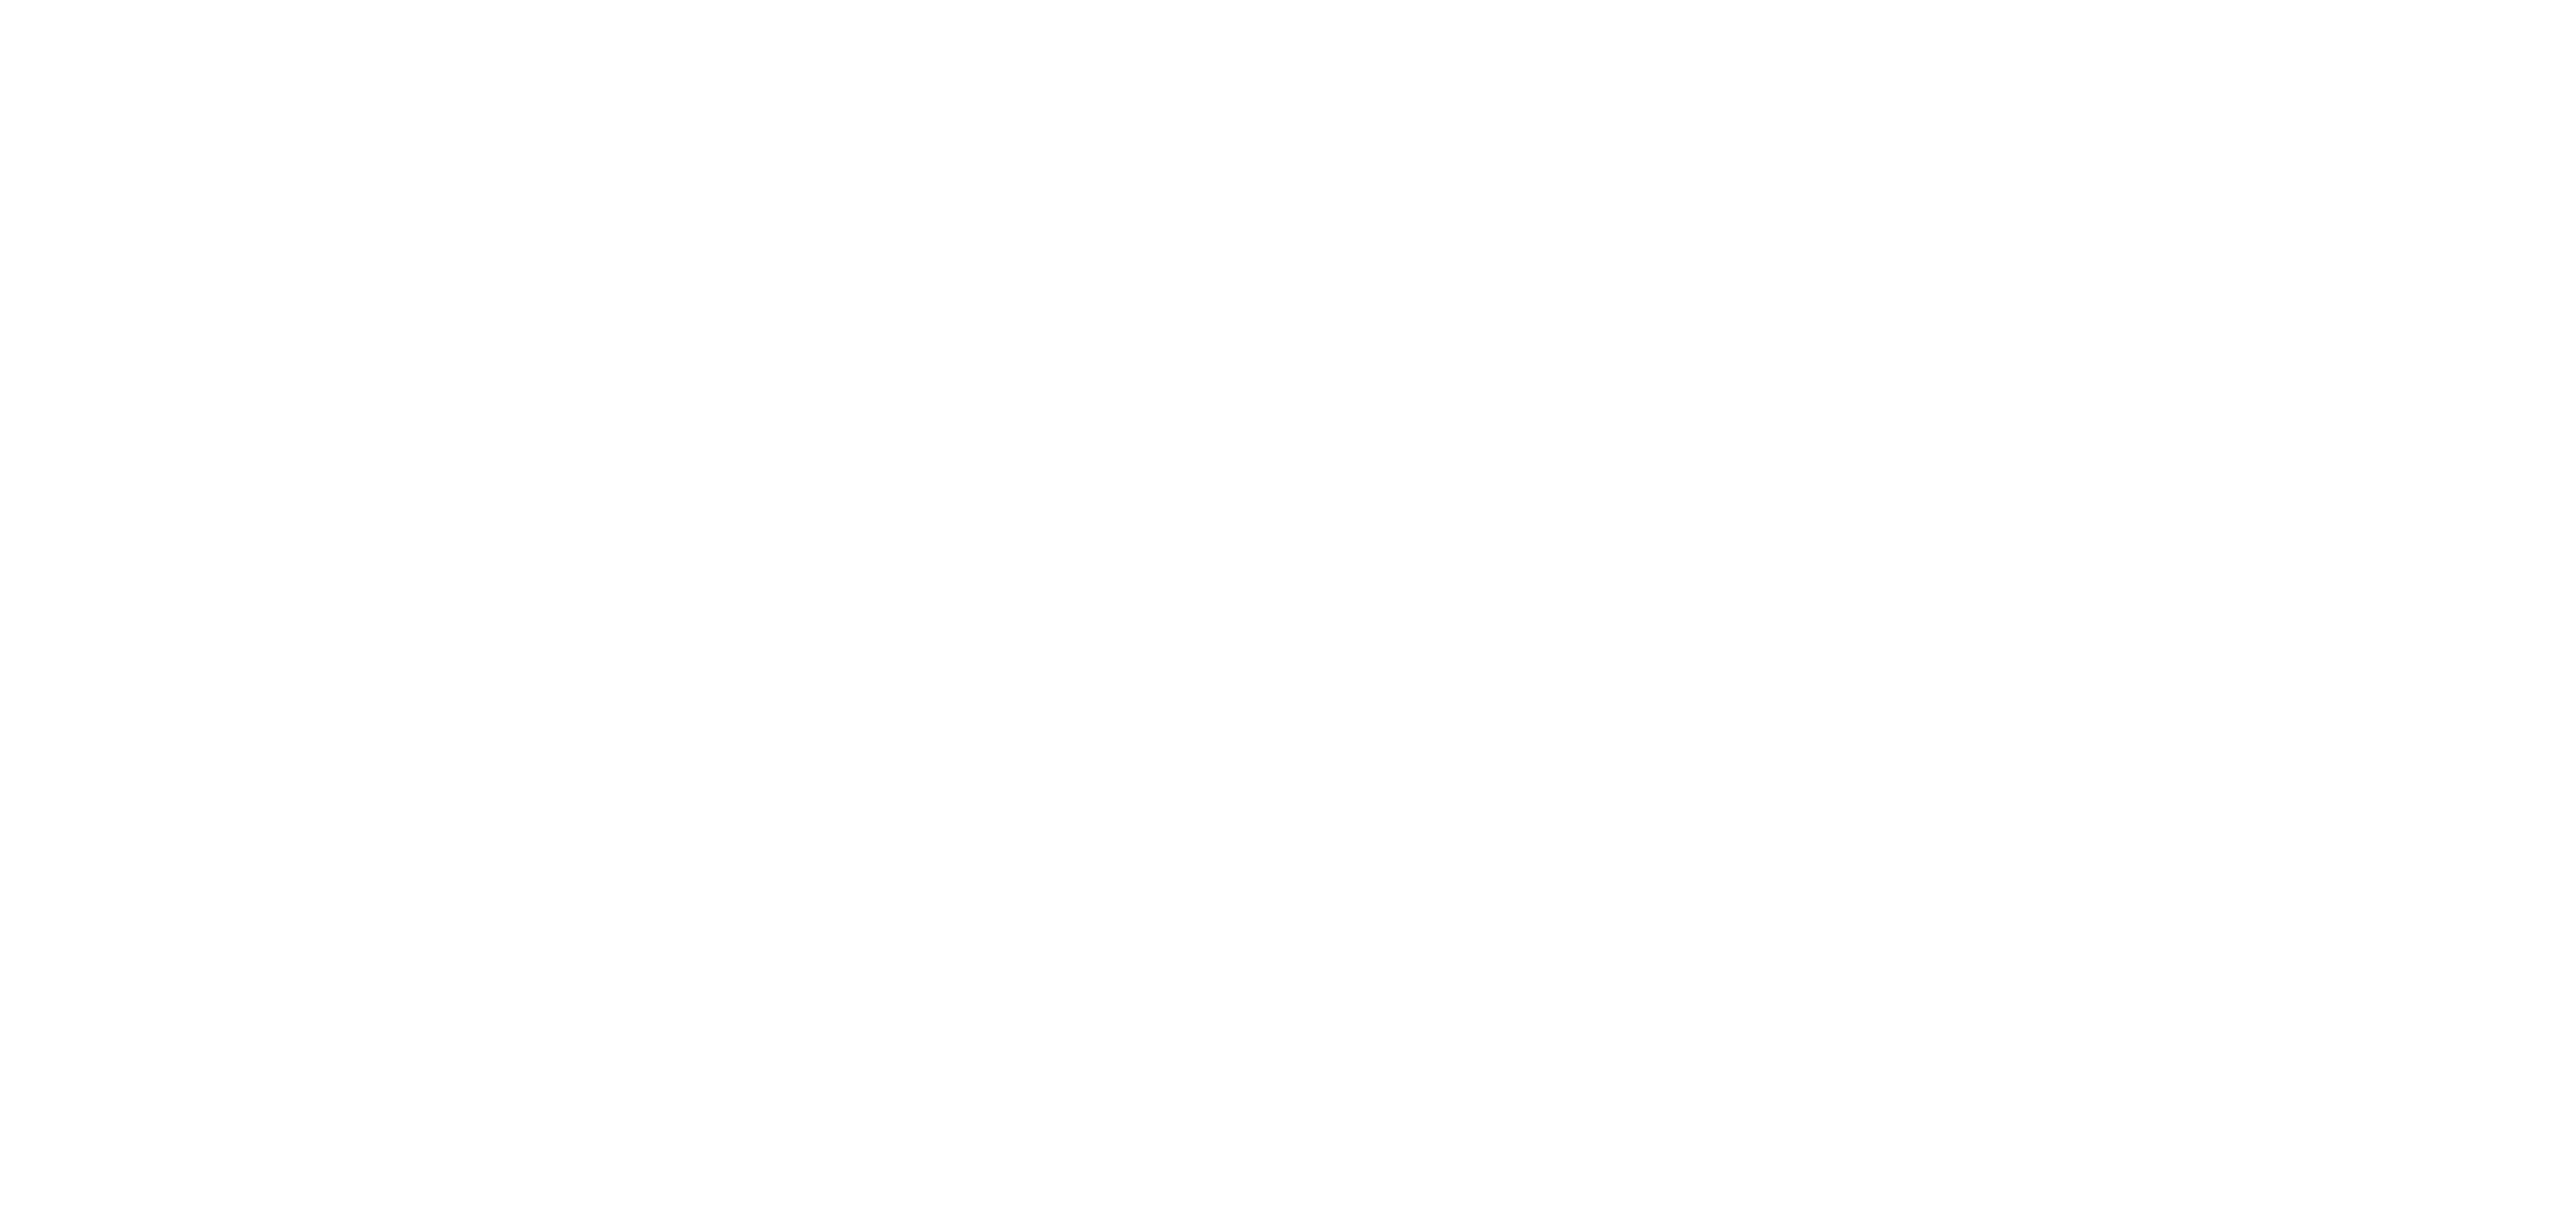 Soleo Logo